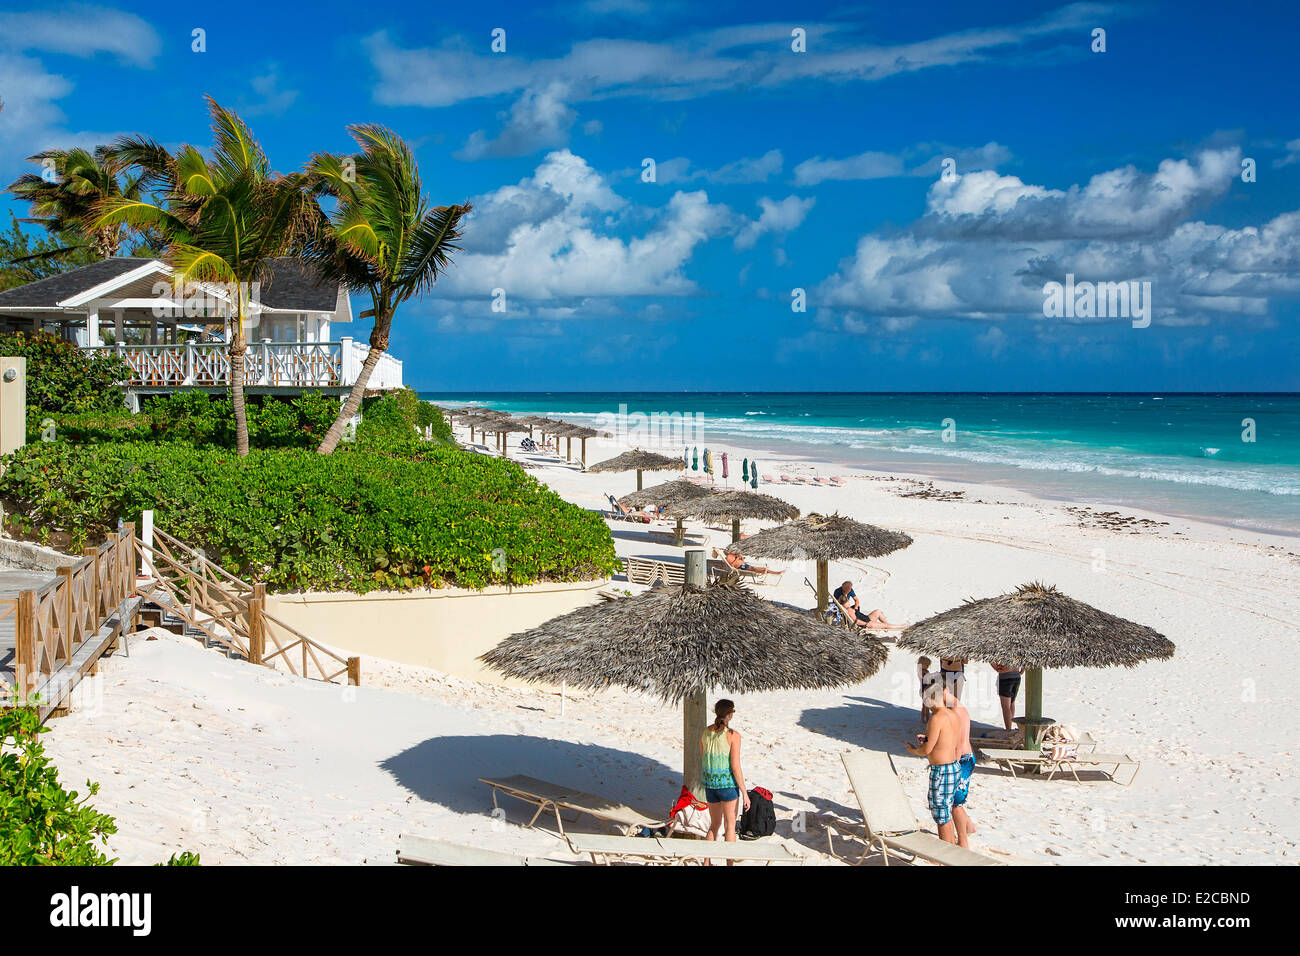 Bahamas, Harbour Island, plage de Coral Sands Hotel Banque D'Images